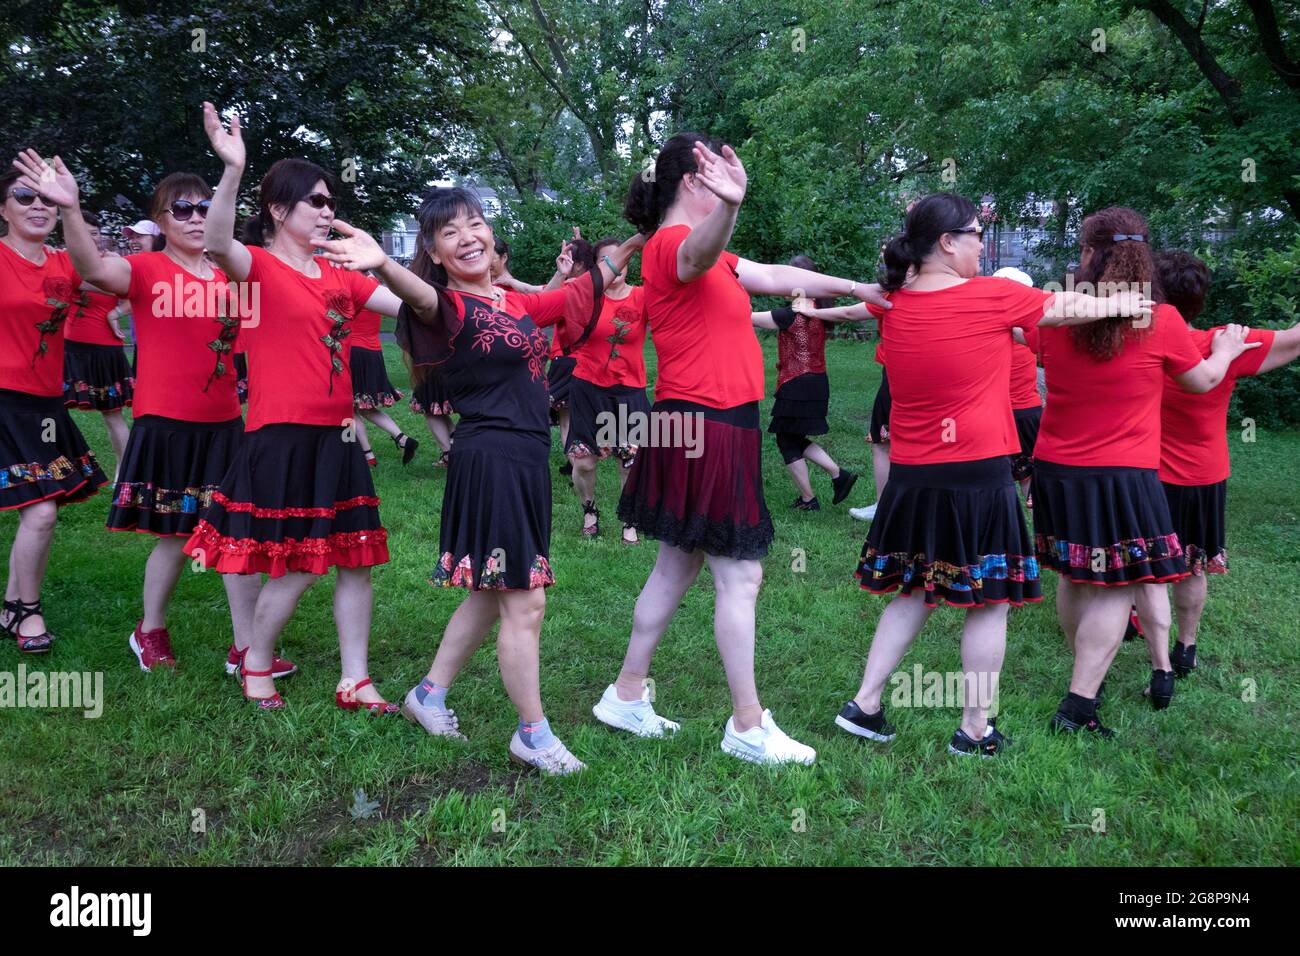 Un jour, ils se sont réunis pour des photos de groupe, une troupe asiatique américaine de femmes d'âge moyen dansant et faisant des gestes pour les caméras. À Queens, New York. Banque D'Images